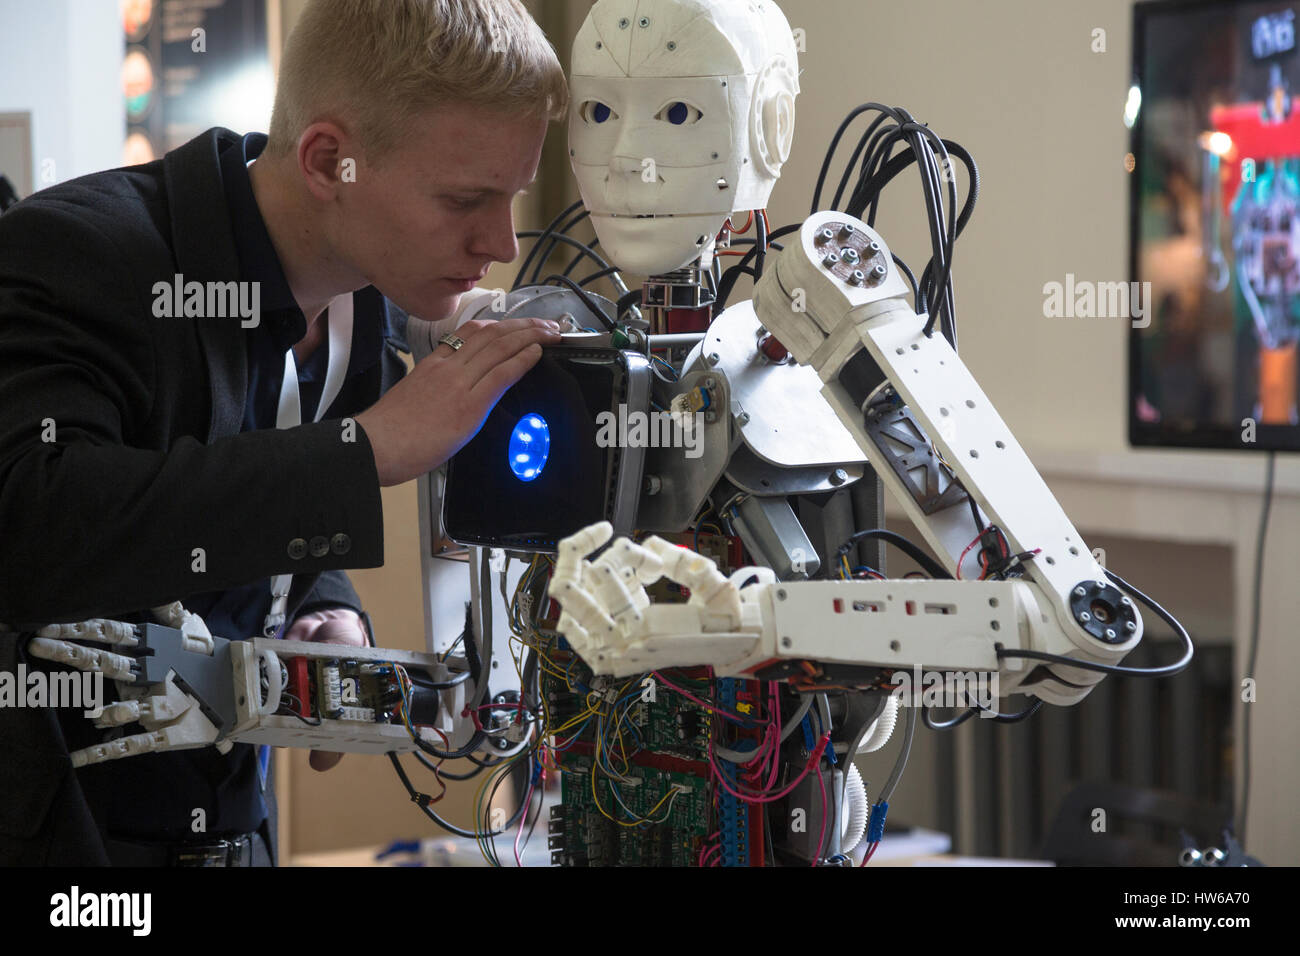 Робототехника и ии. «Робостанция» – выставка про роботов на ВДНХ. Современные роботы. Робот с искусственным интеллектом.